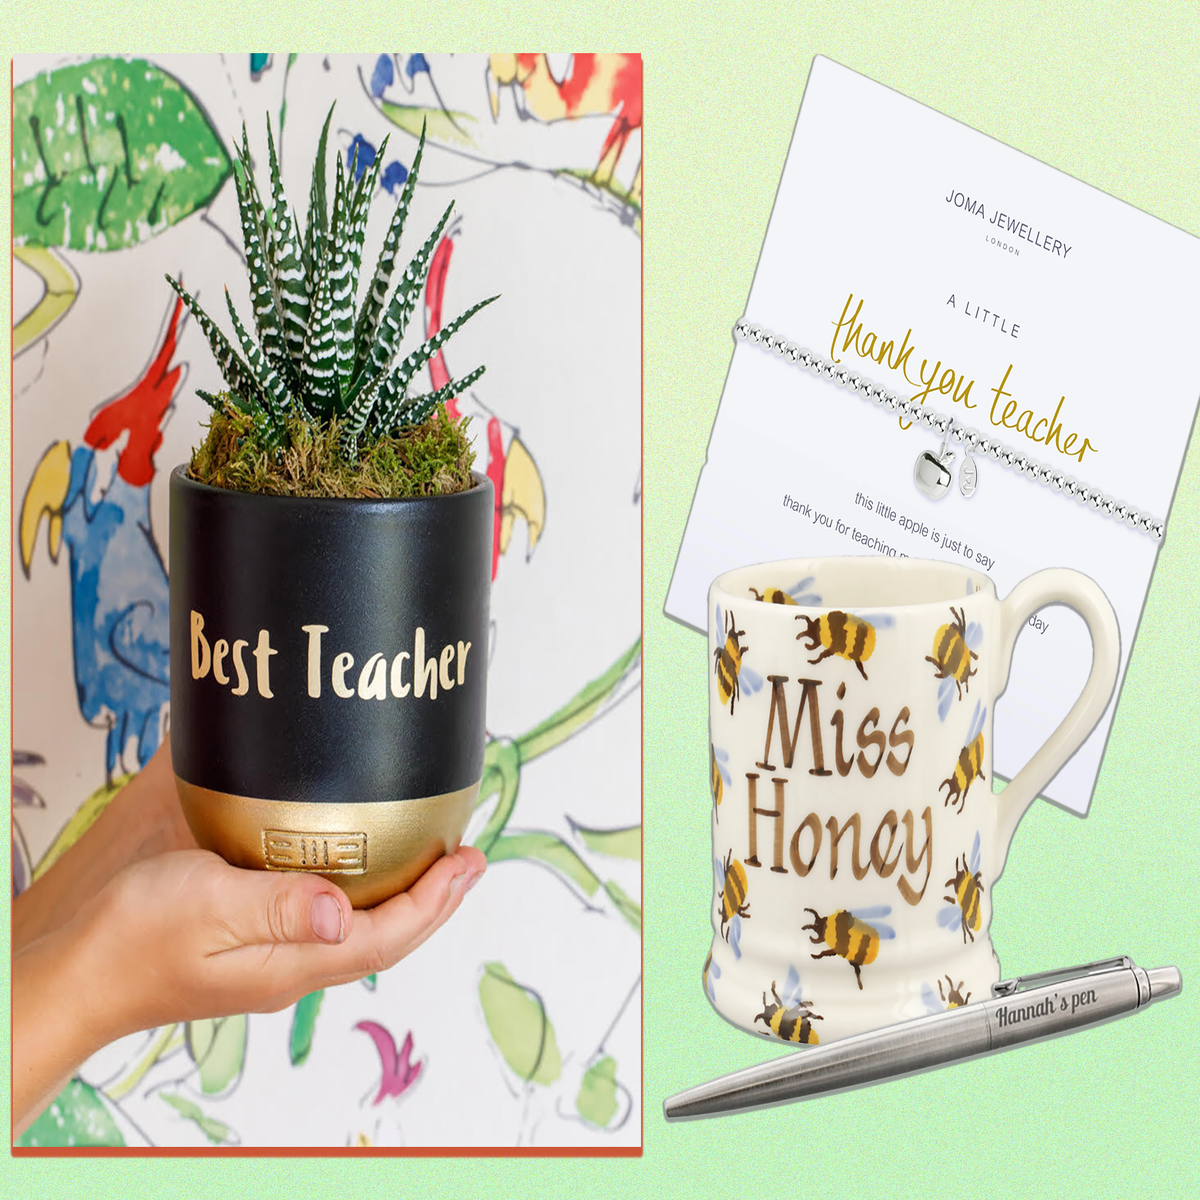 5 Fun Teacher Gift Ideas  Thank you teacher gifts, Teacher gifts